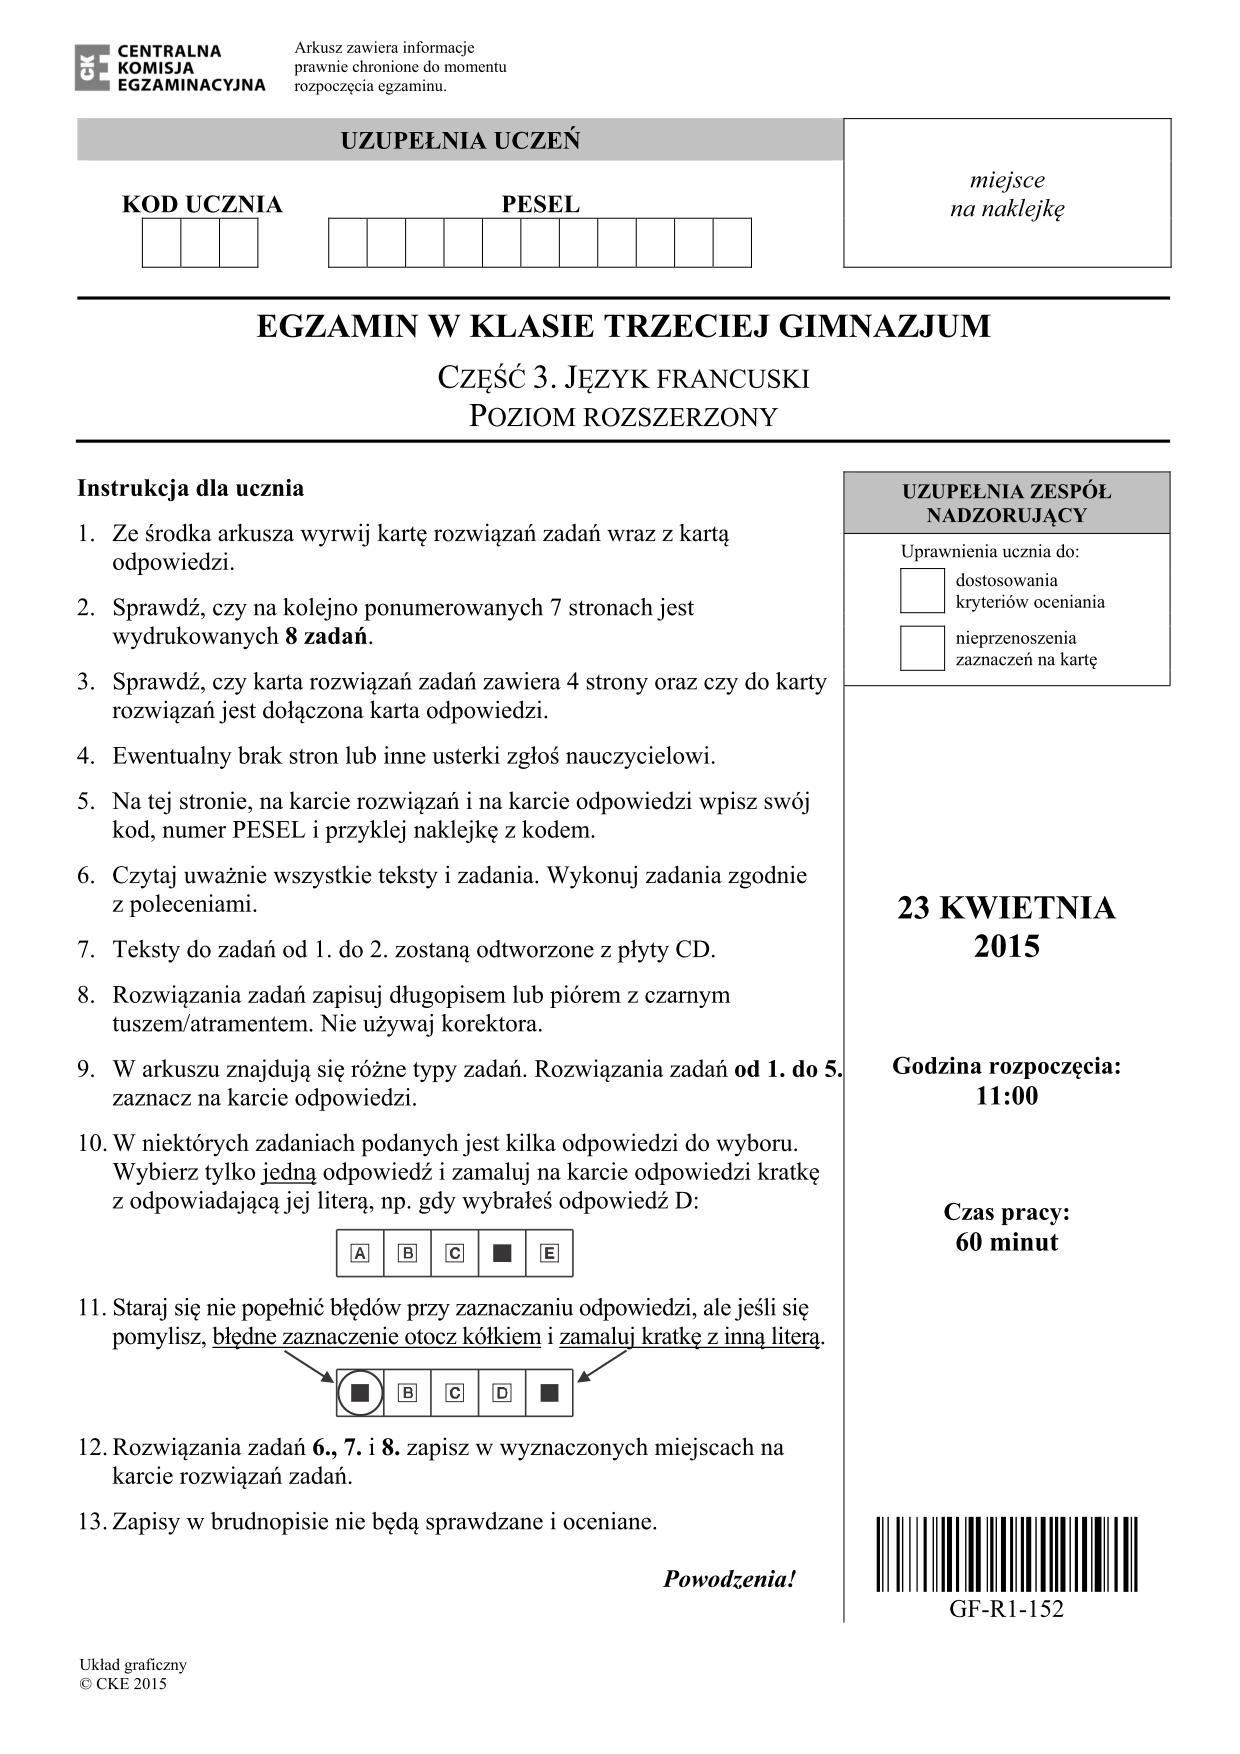 pytania-francuski-poziom-rozszerzony-egzamin-gimnazjalny-2015-1